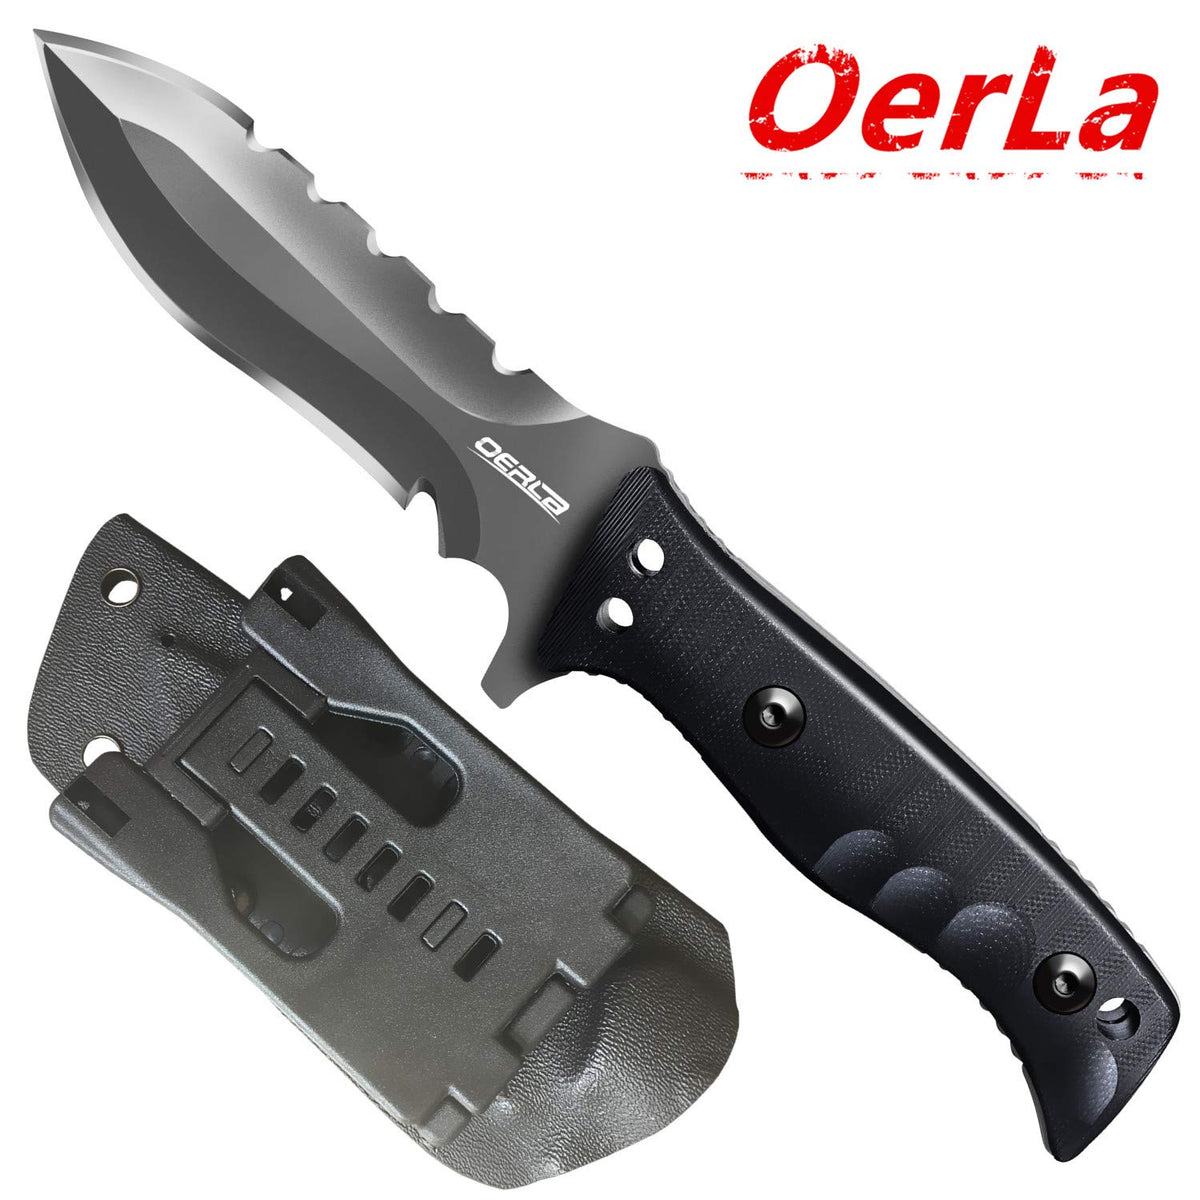 OL-0021SD Knife OERLA Blade Fixed